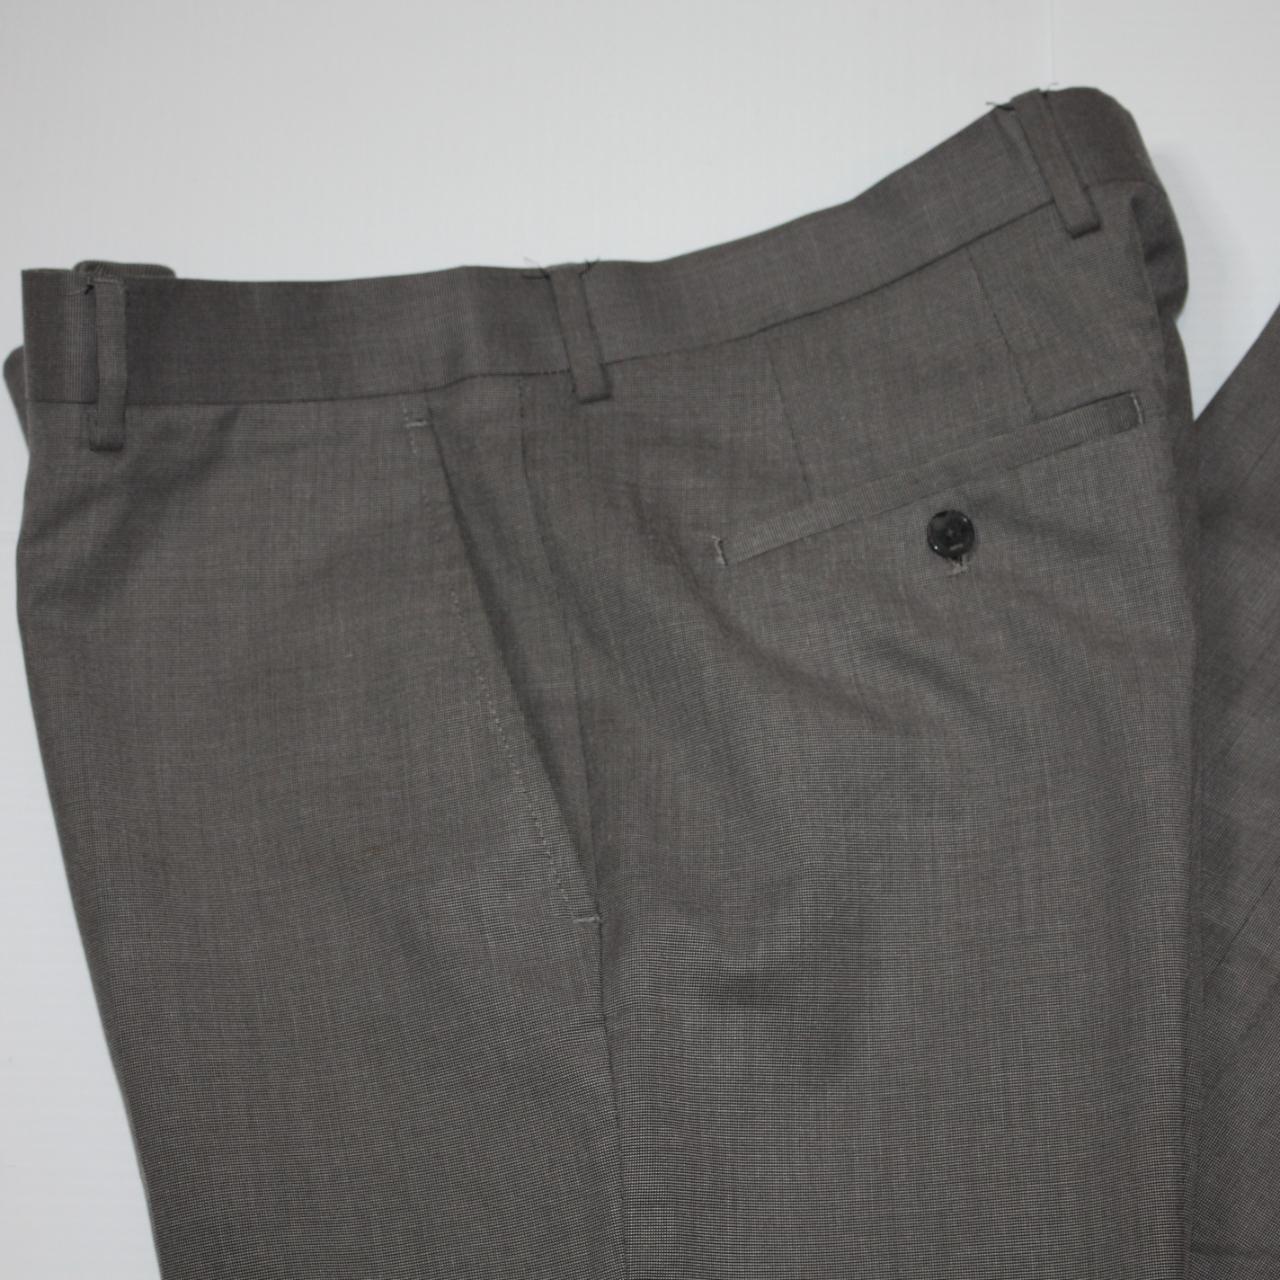 Mexx Metropolitan Men's Gray Pants Trousers size W36... - Depop